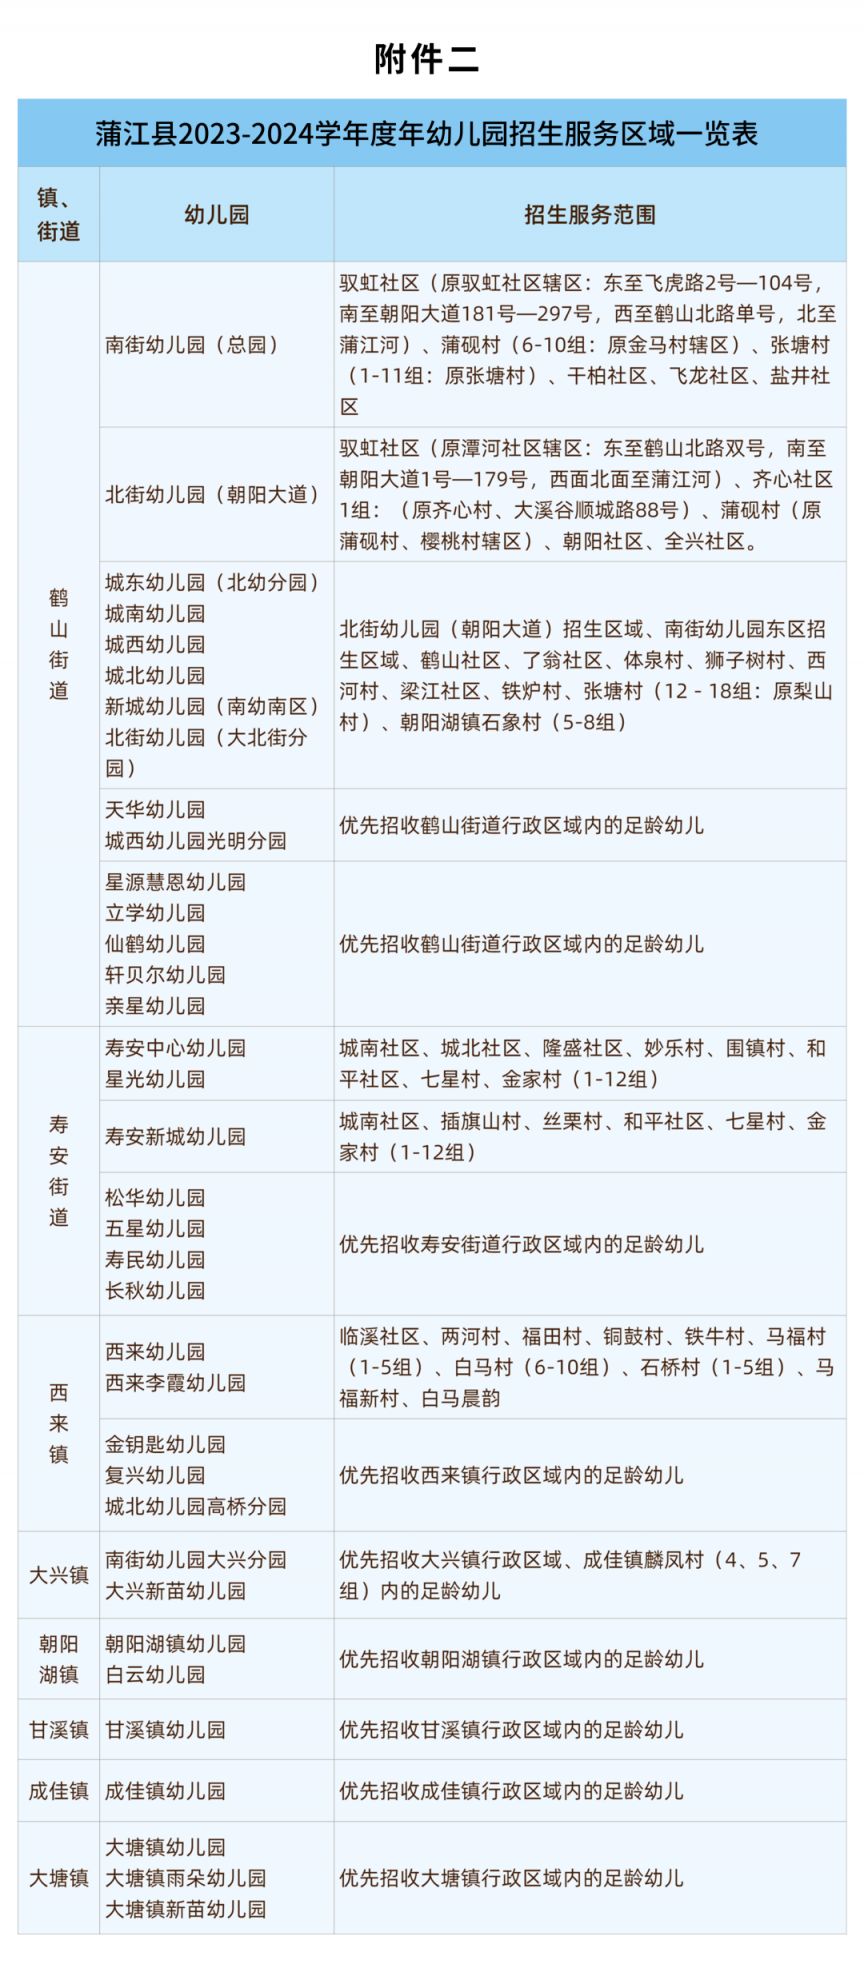 蒲江幼儿园招生信息网 2023蒲江县幼儿园招生细则